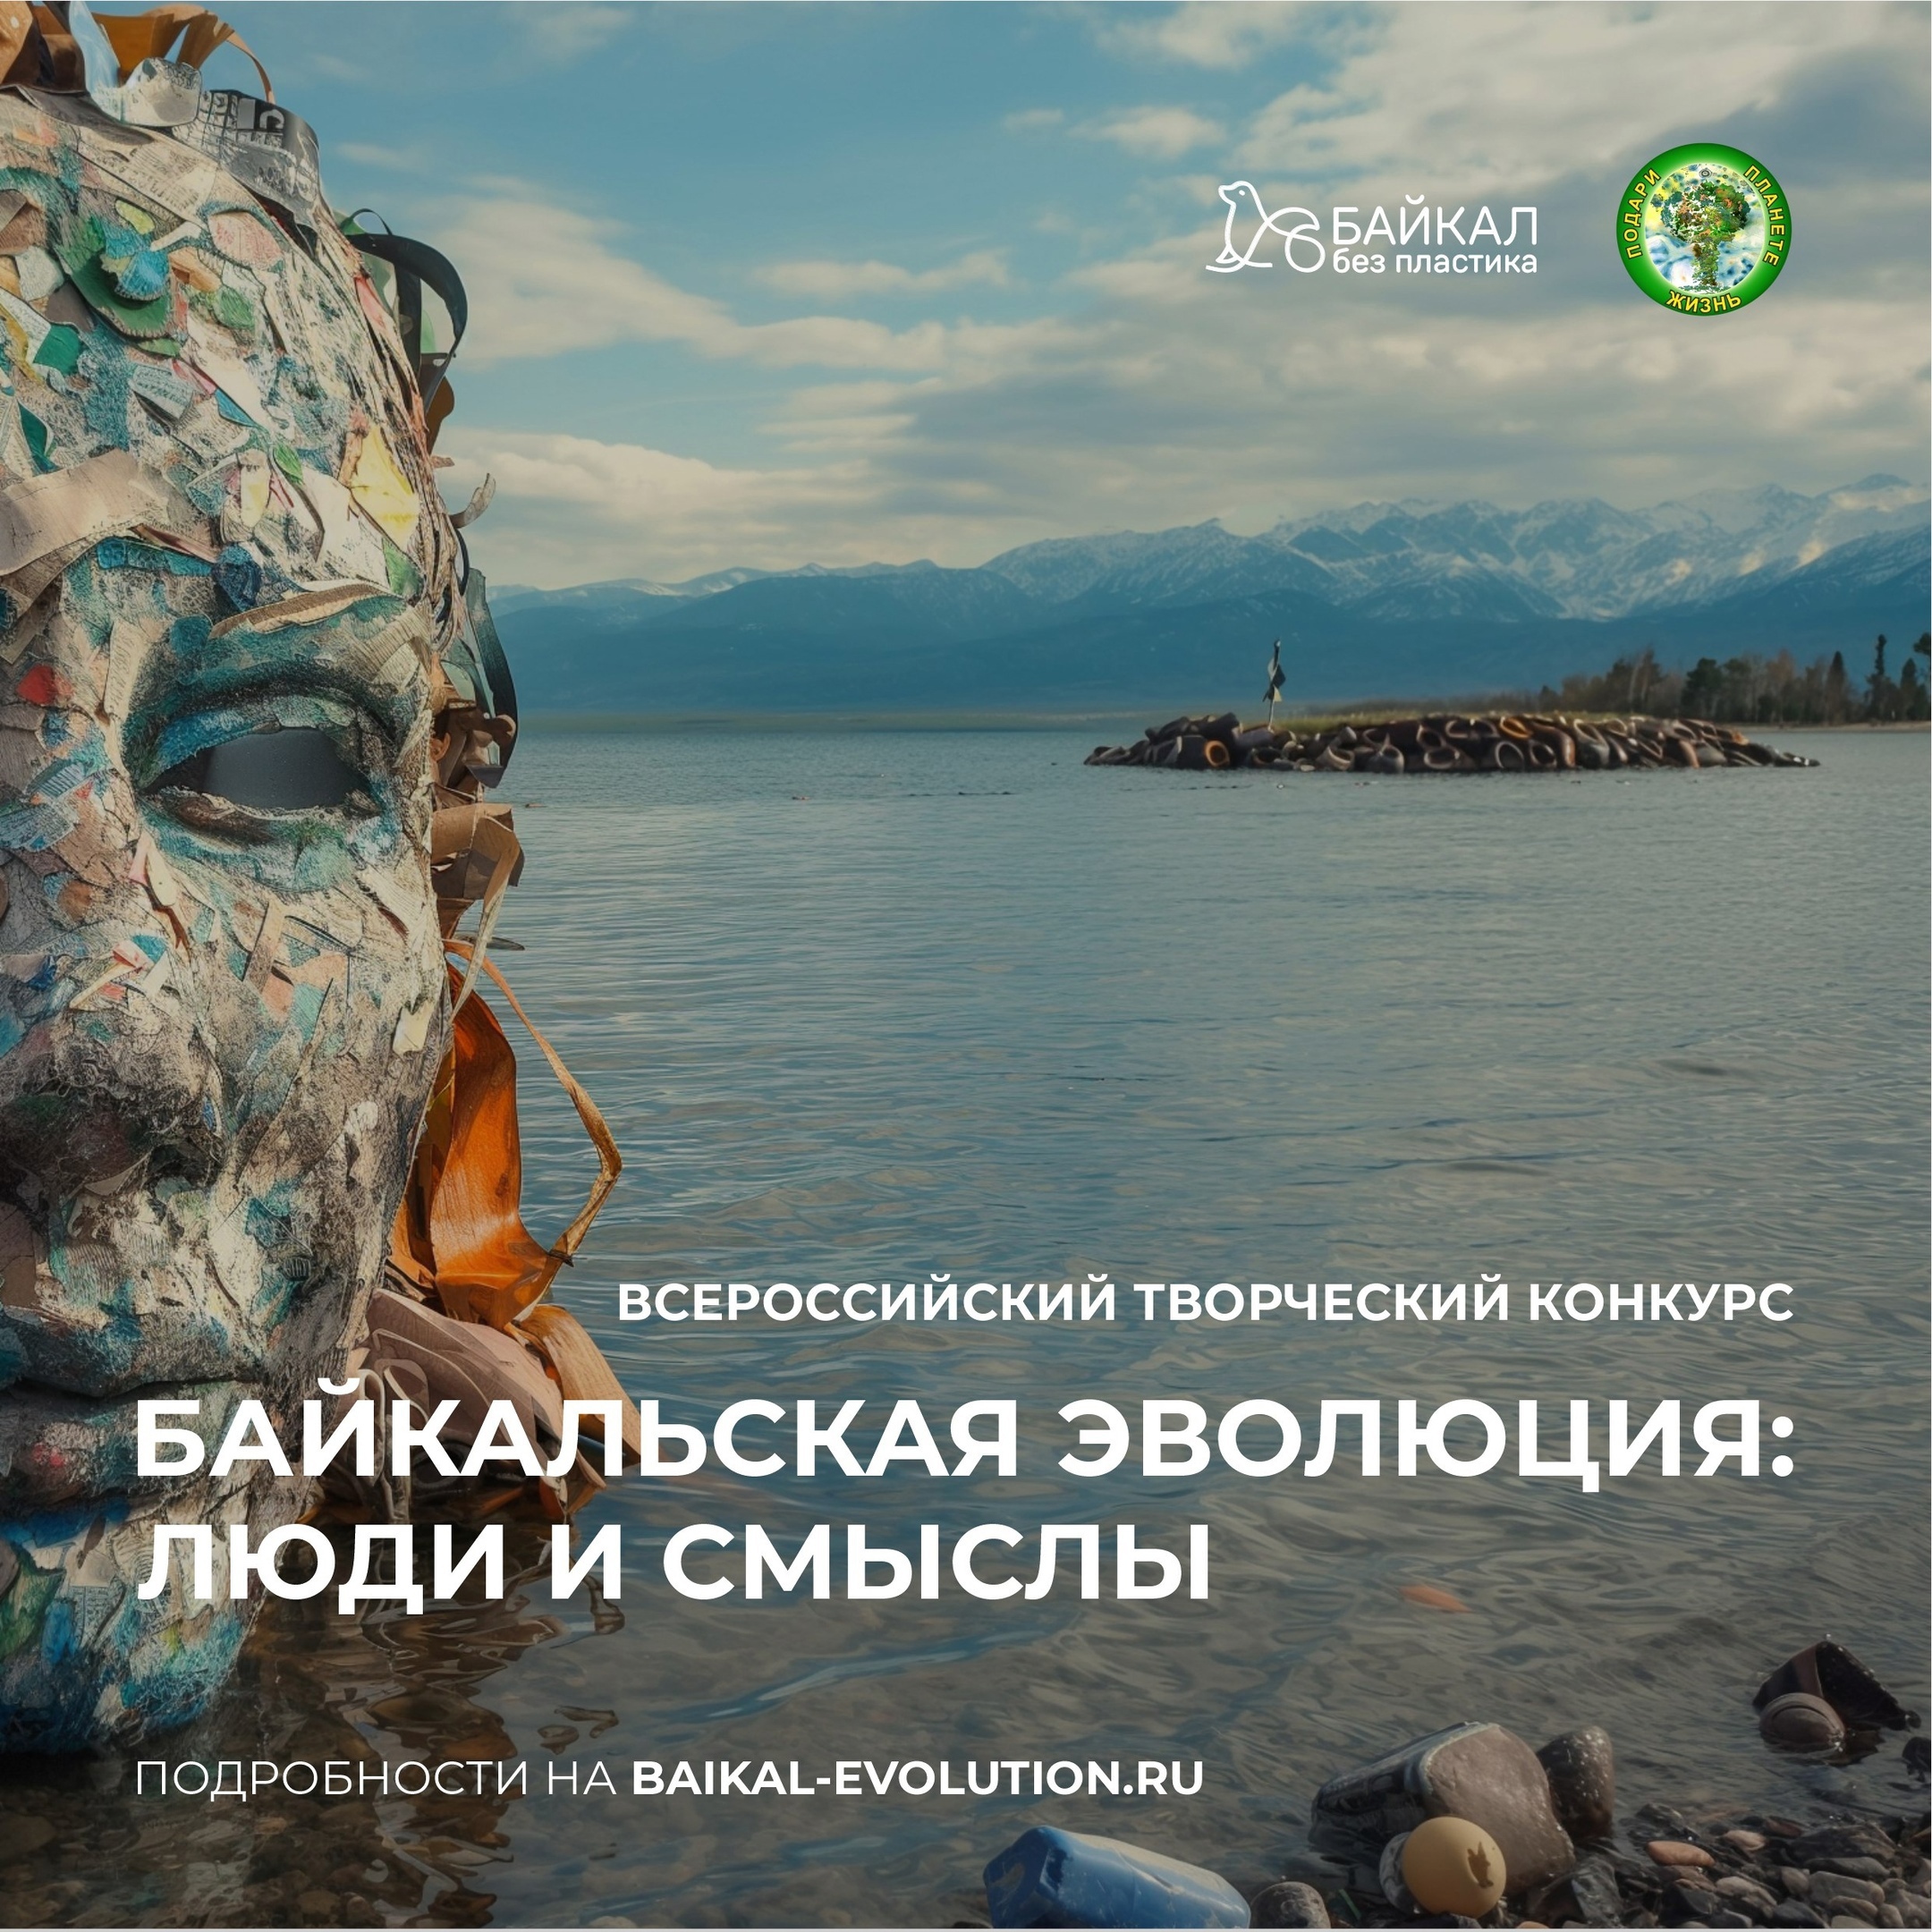 Фото: «Байкальская эволюция: люди и смыслы» 